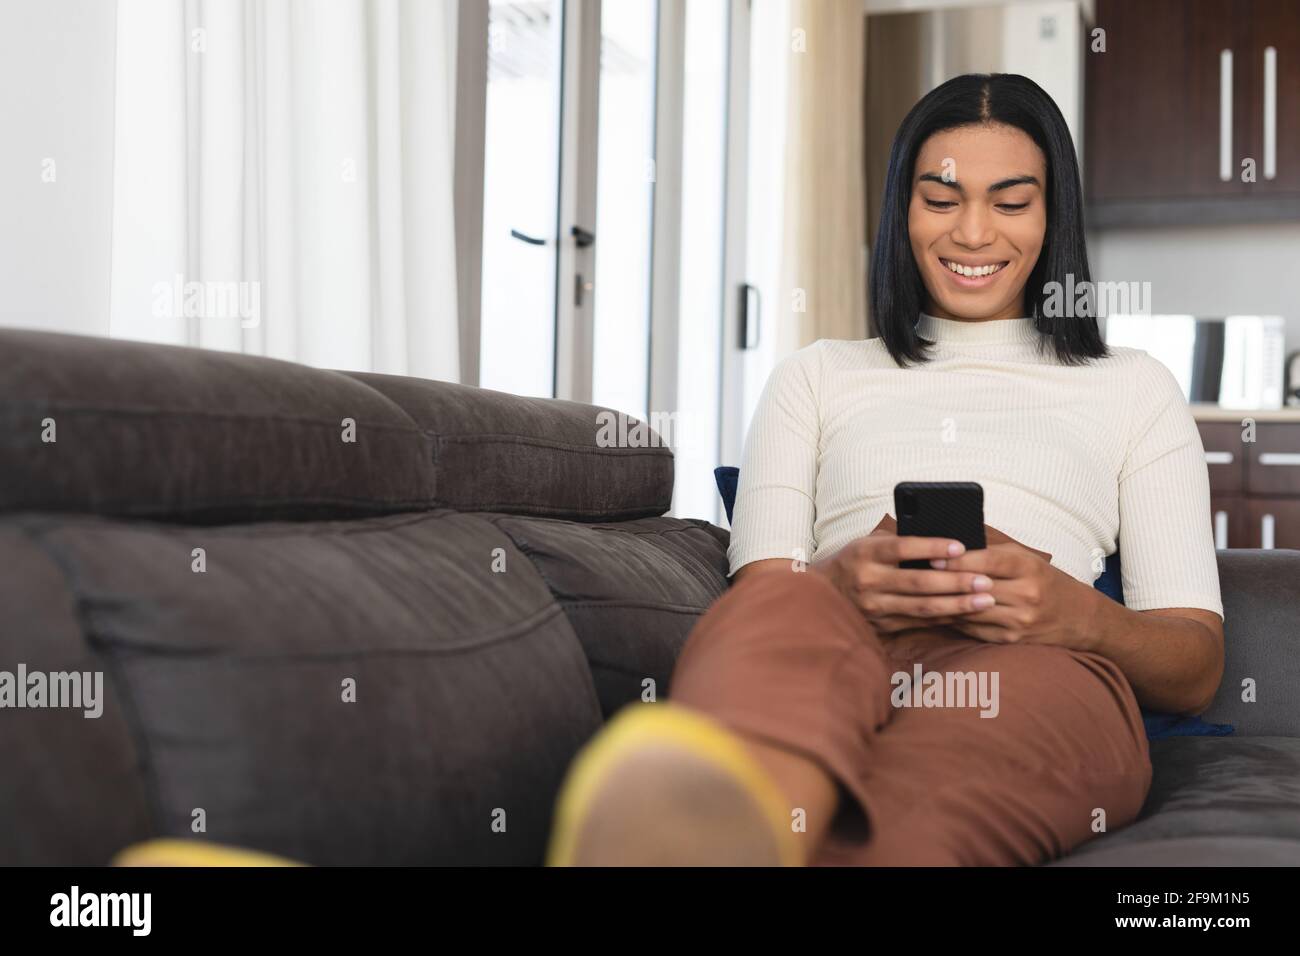 Bonne femme transgenre de race mixte se détendant dans le salon assis sur le canapé prenant des selfies Banque D'Images